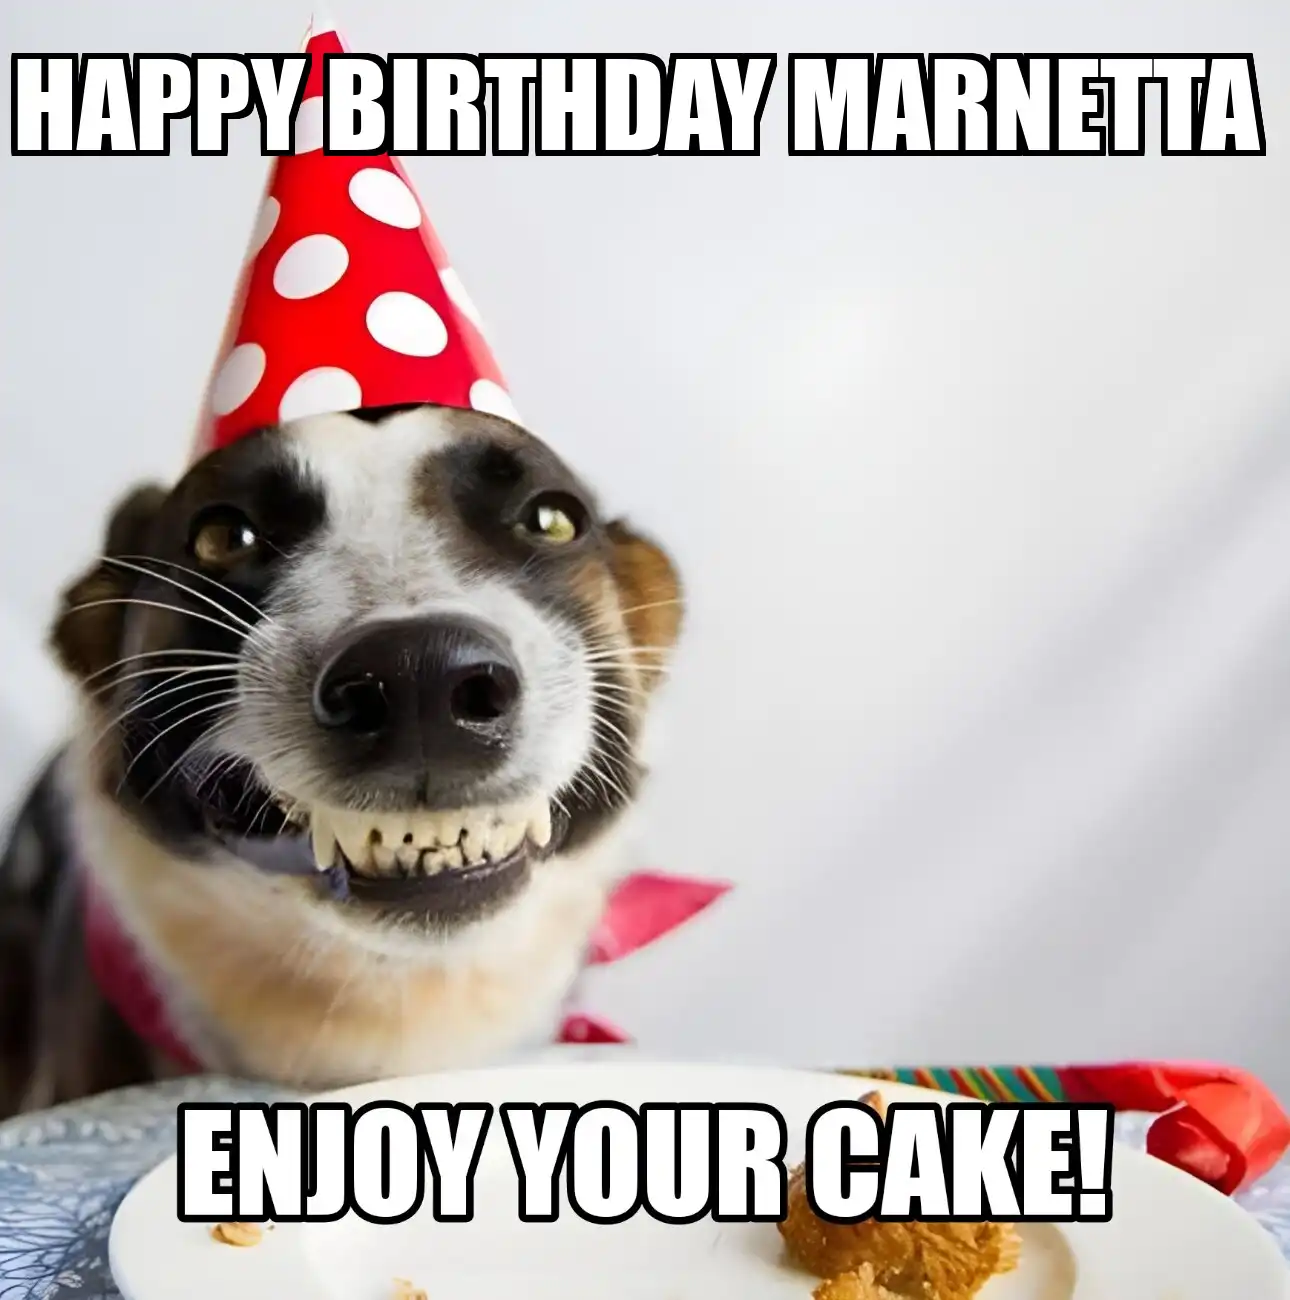 Happy Birthday Marnetta Enjoy Your Cake Dog Meme